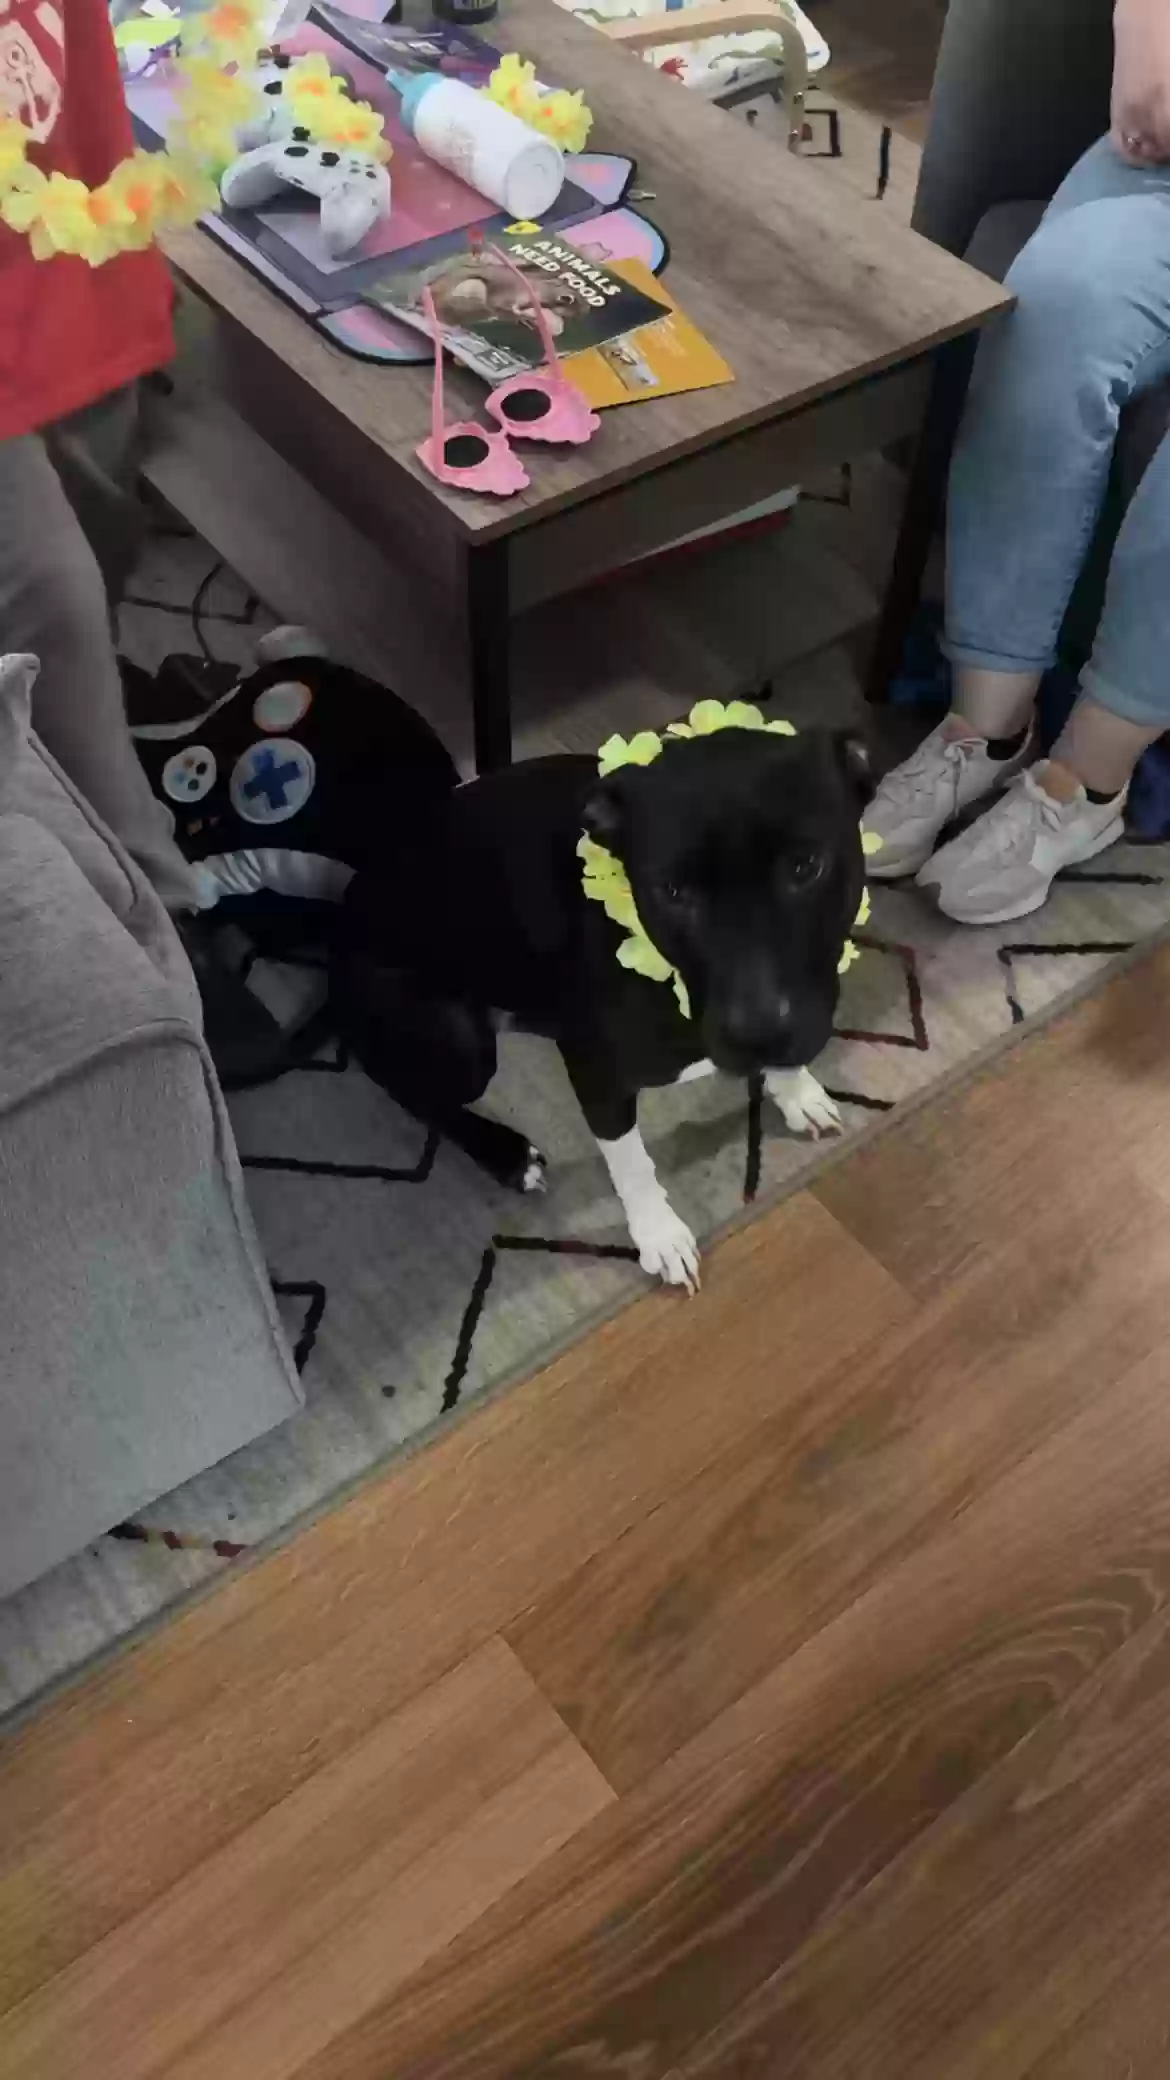 adoptable Dog in Dallas,TX named Oreo